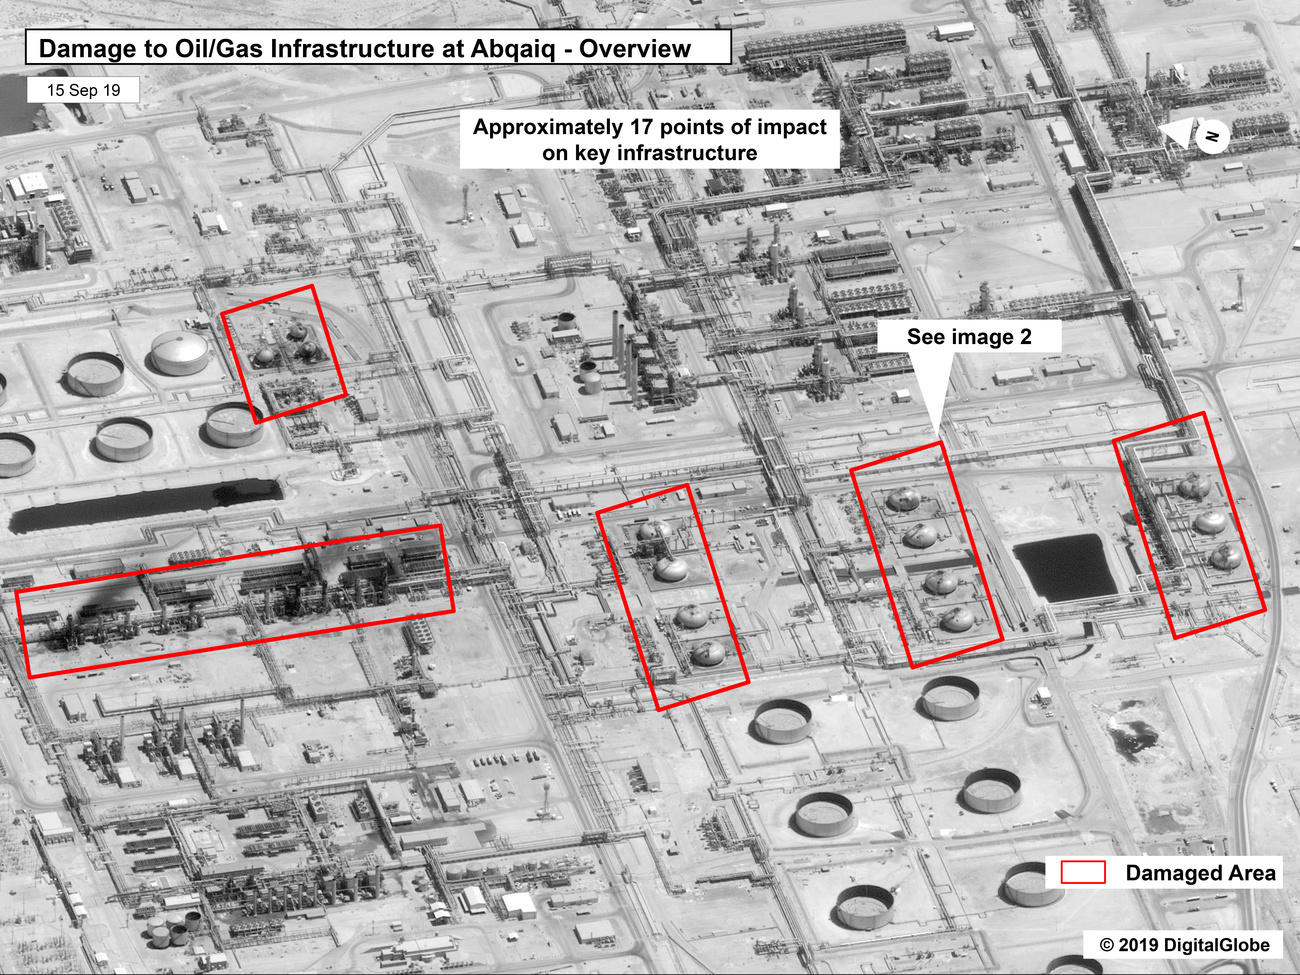 Immagine satellitare del sito saudita bombardato dai droni